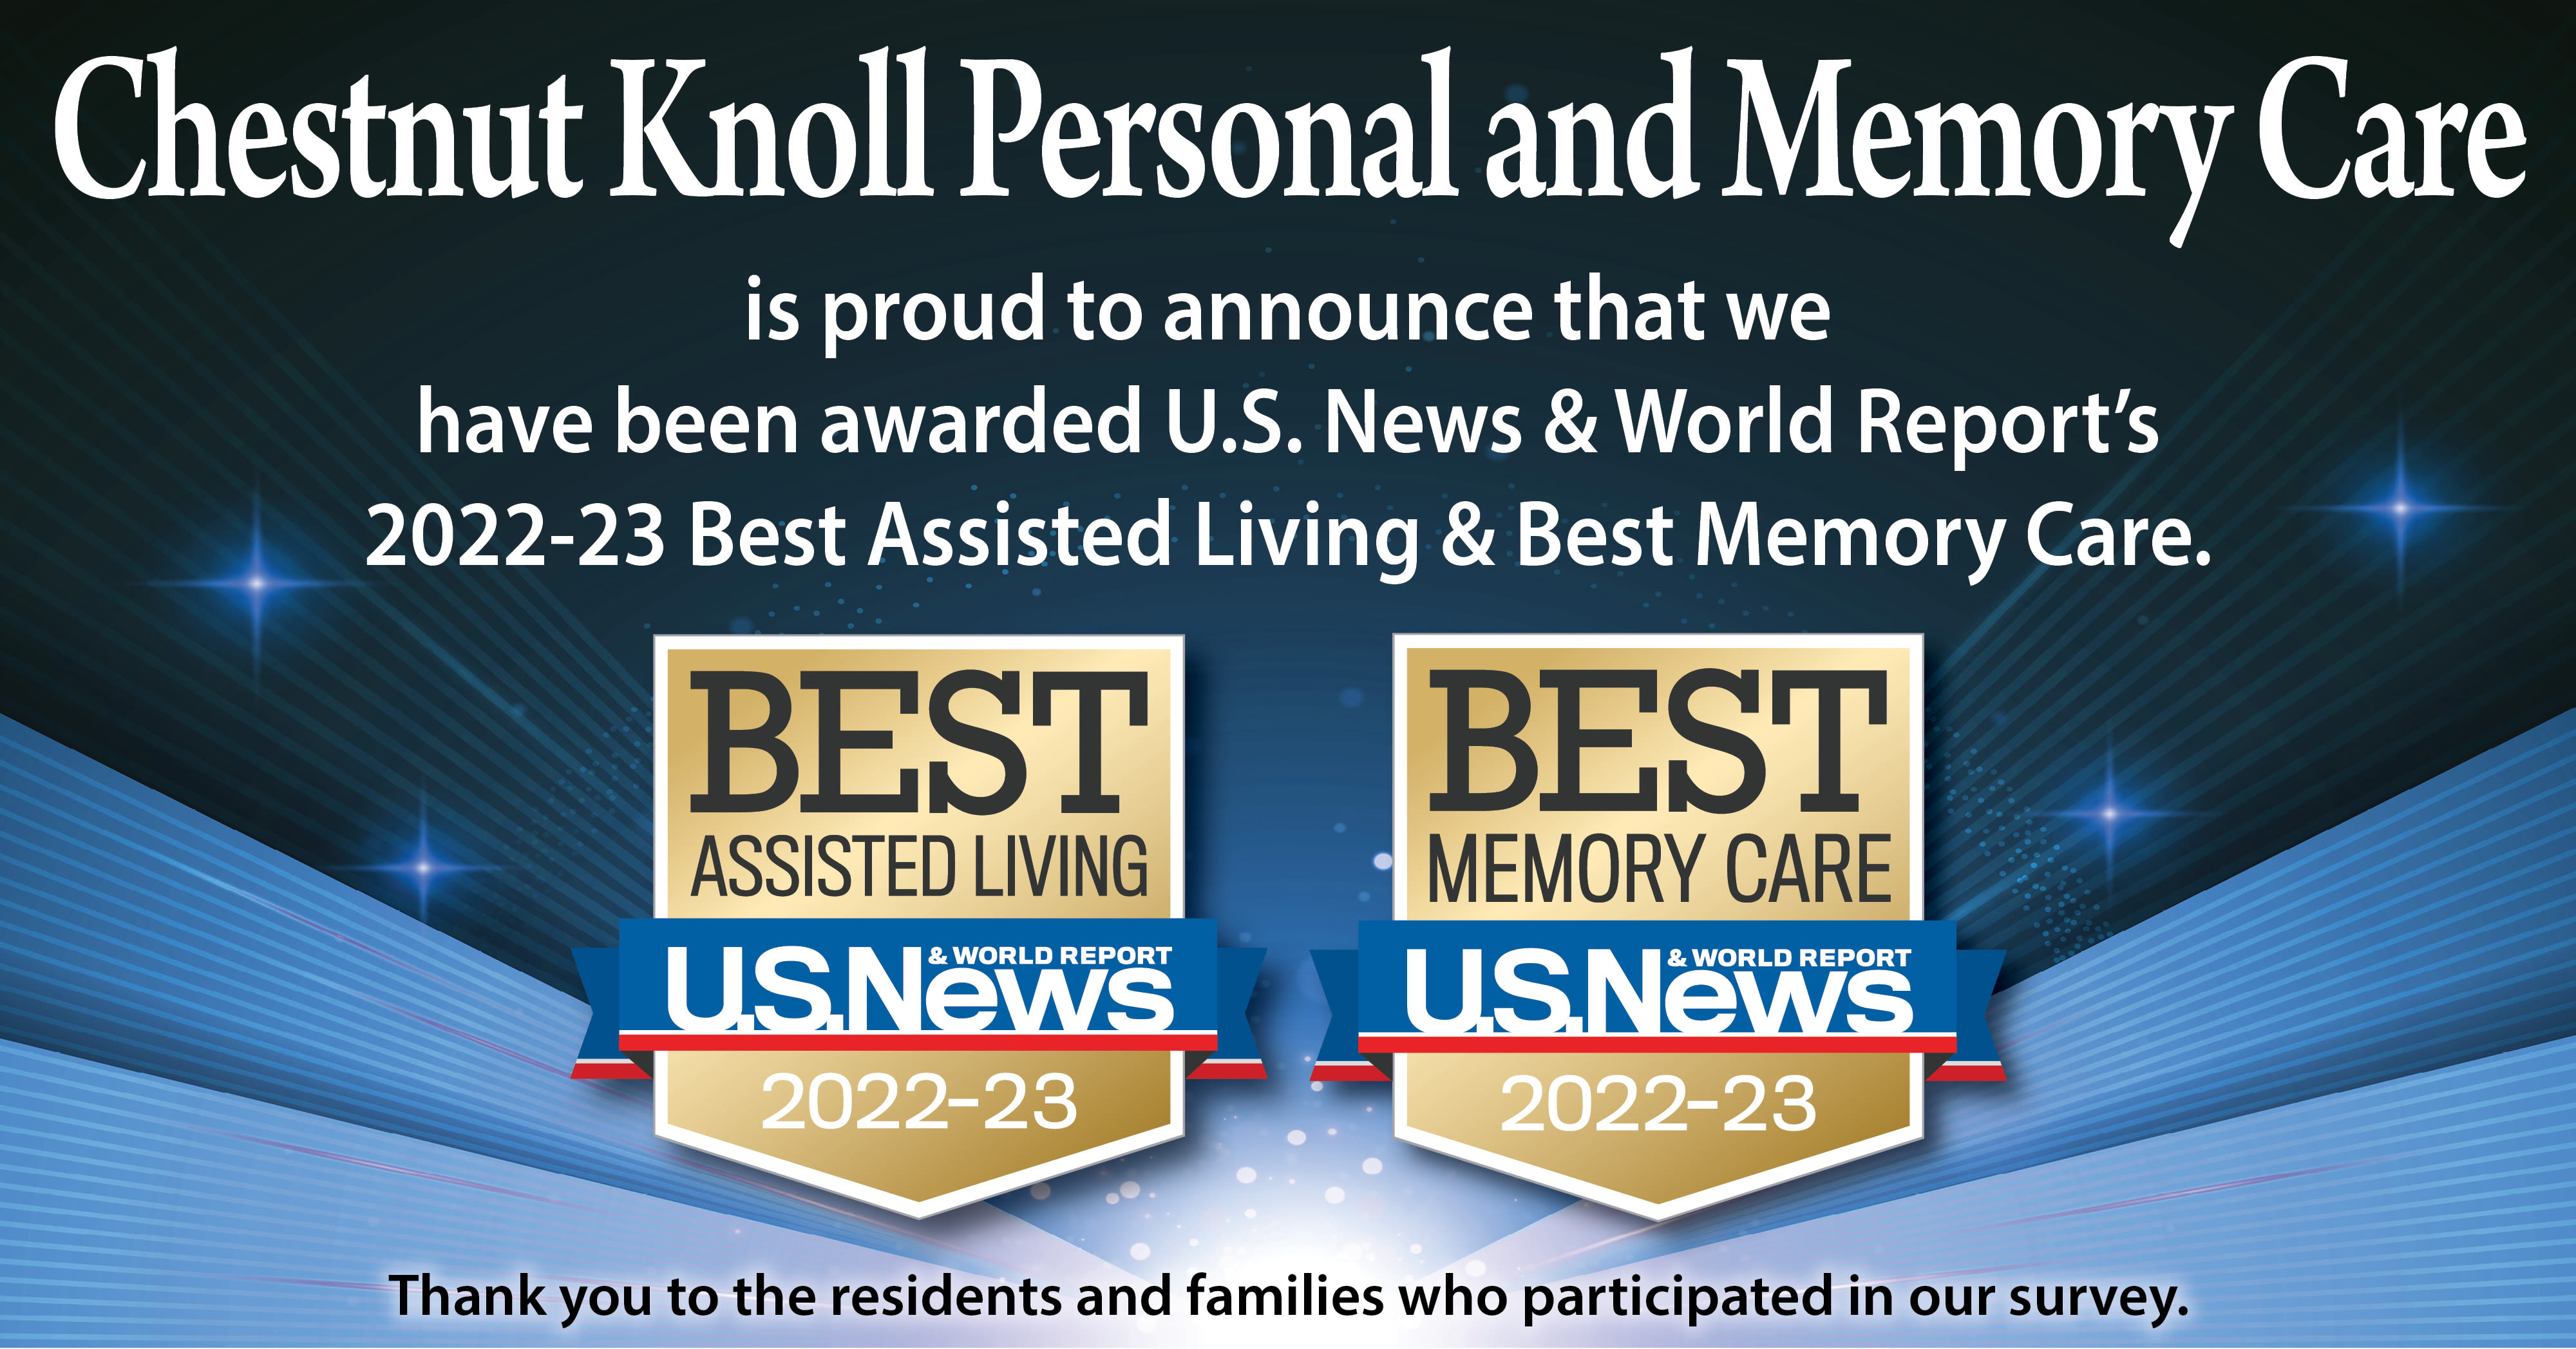 US News Best Senior Living Award 2022 for Chestnut Knoll